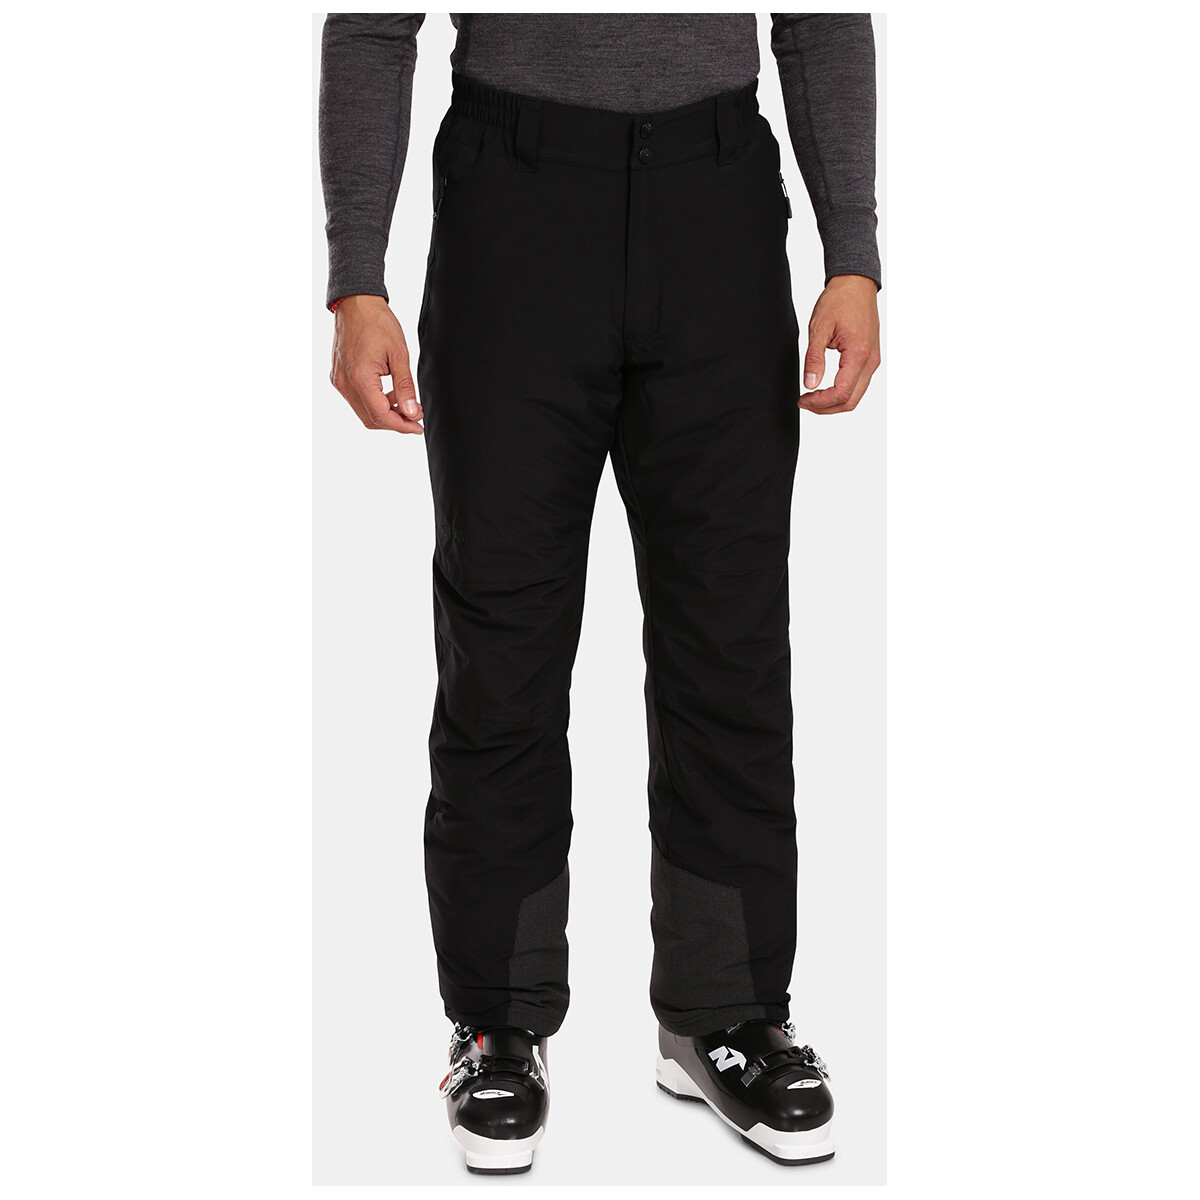 Vêtements Pantalons Kilpi Pantalon de ski pour homme  GABONE-M Noir